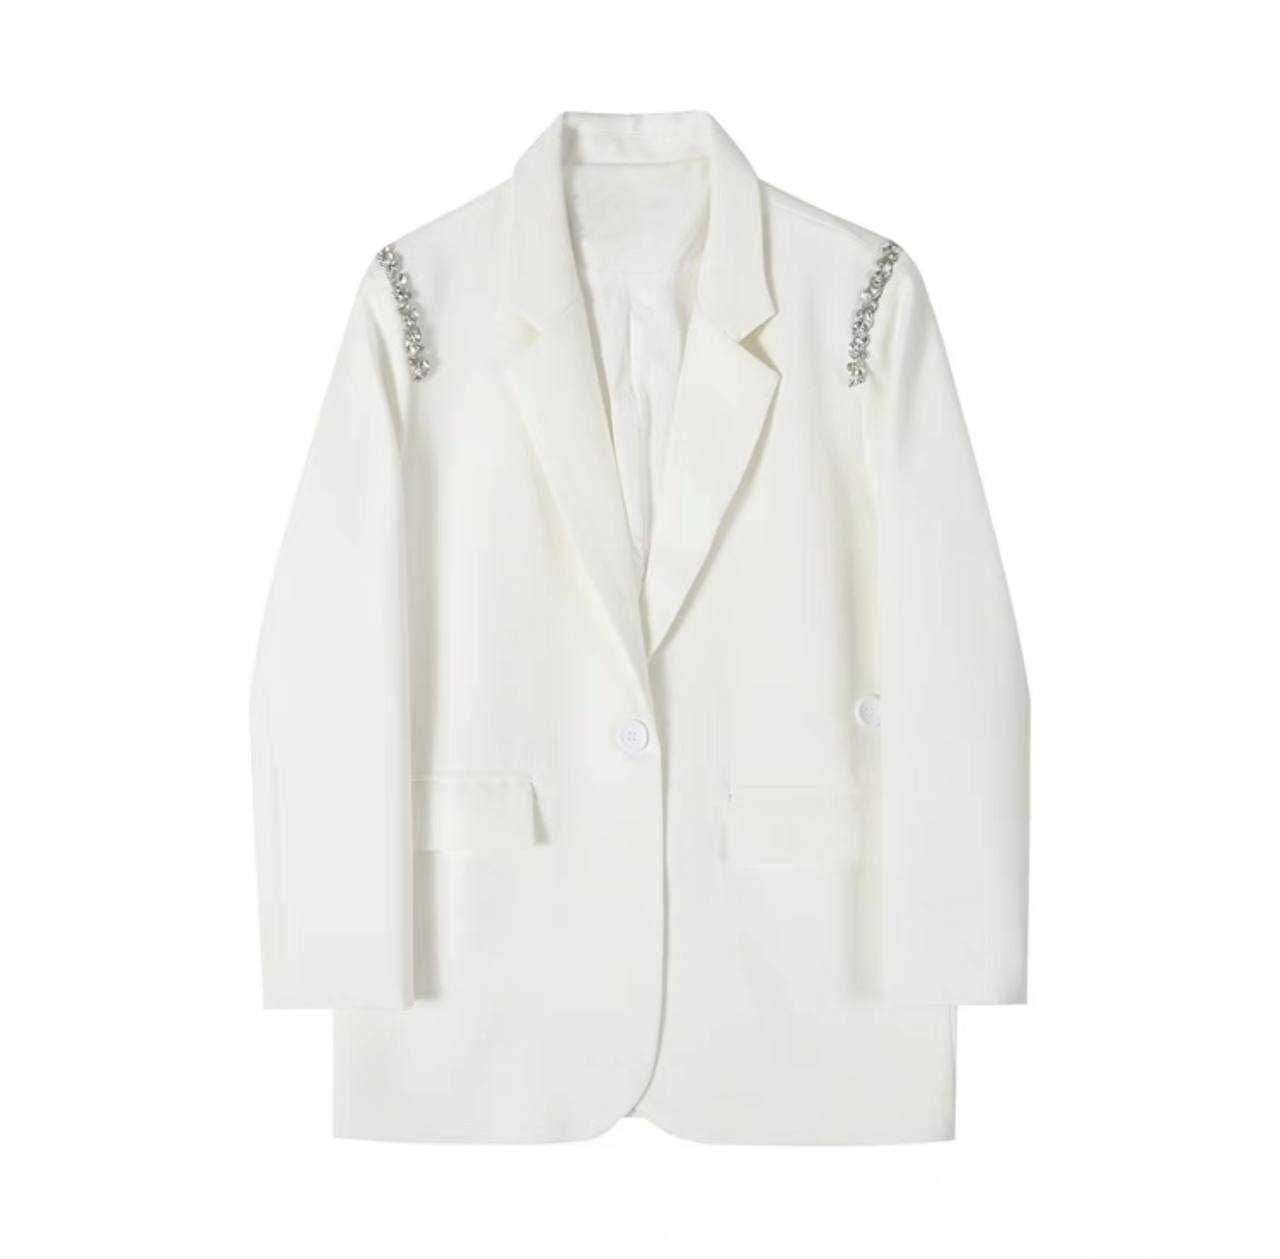 Белый пиджак на лето, білий піджак на літо, піджак як в ZARA, жакет